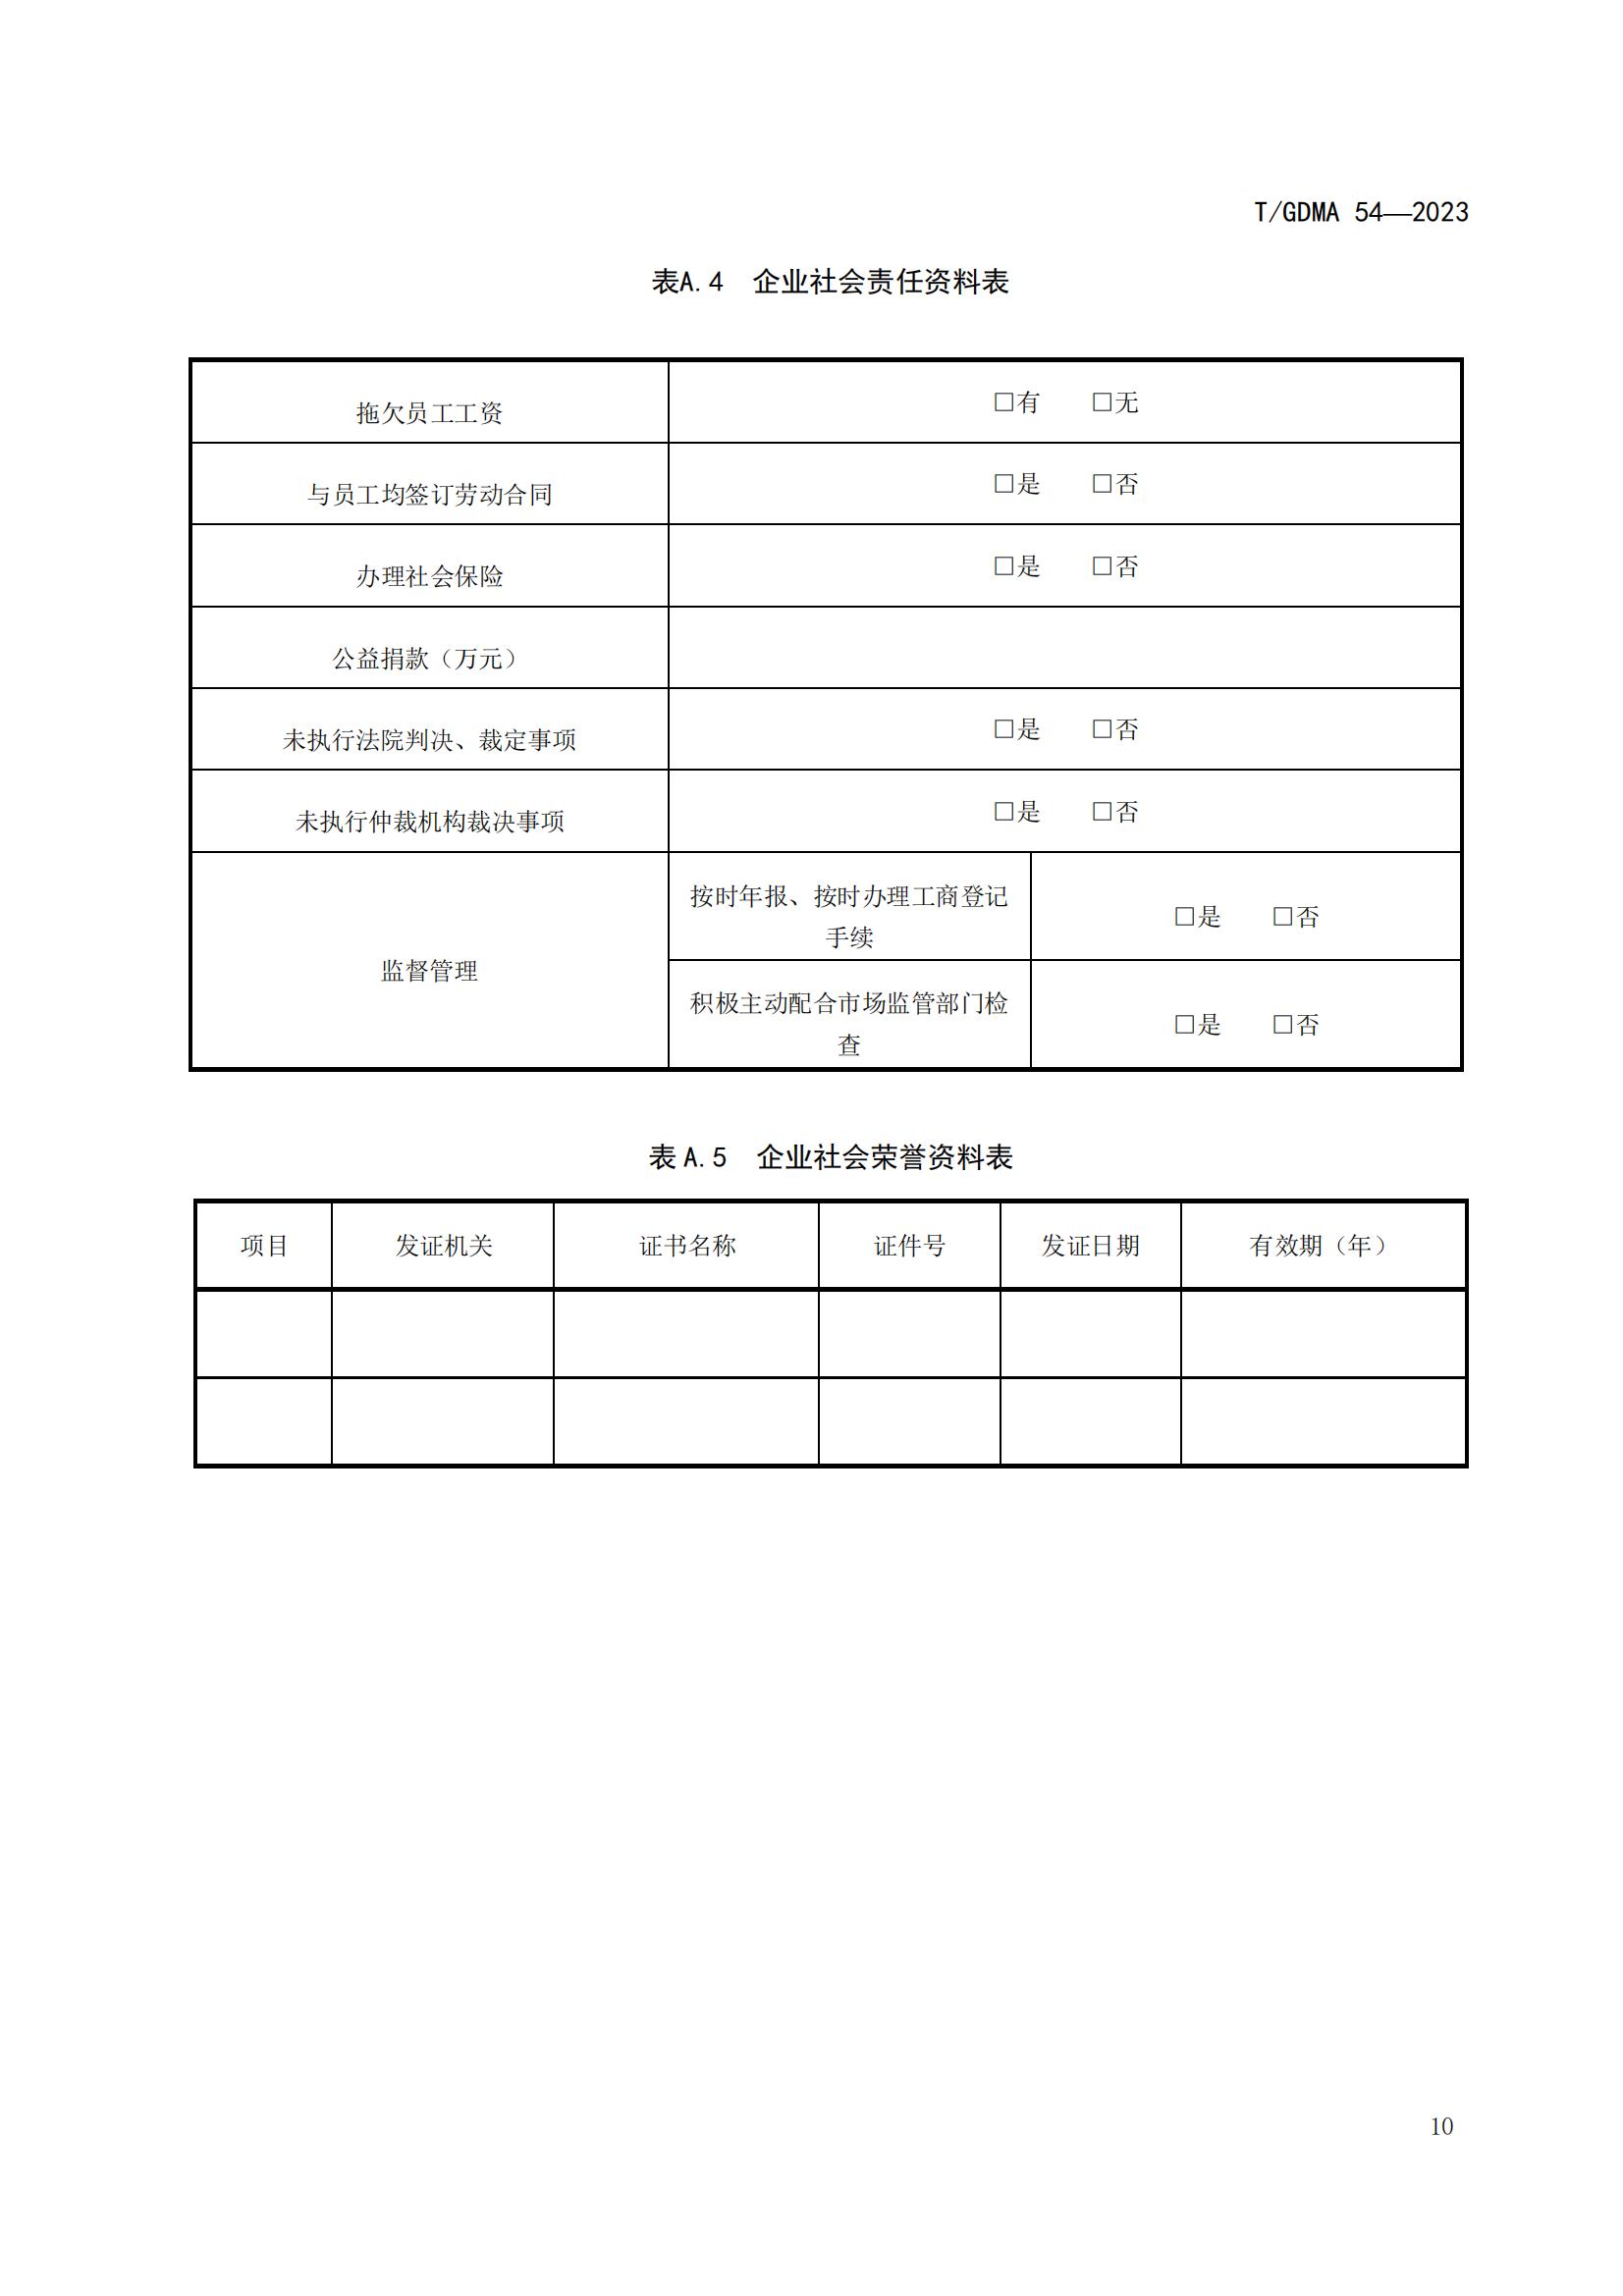 20230427 广东省诚信经营企业评定规范意见（发布稿）(1)(1)_10.jpg